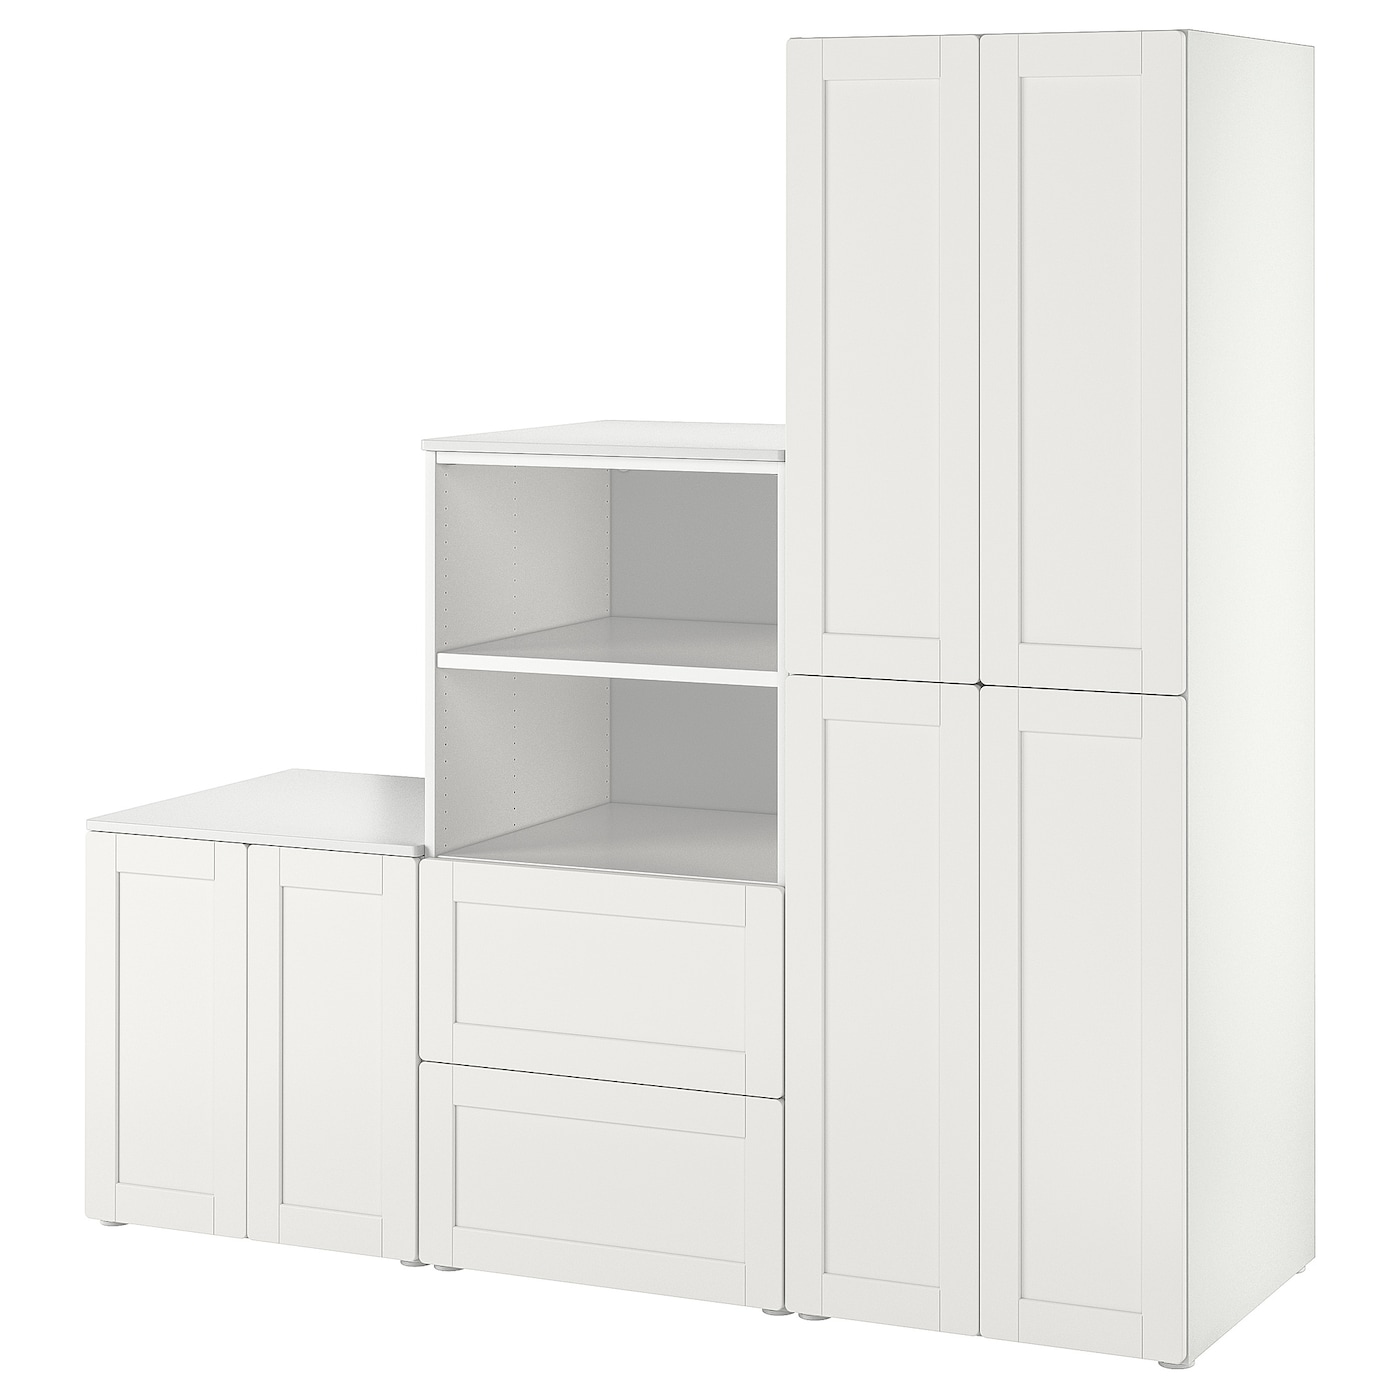 Детская гардеробная комбинация - IKEA PLATSA SMÅSTAD/SMASTAD, 181x57x210см, белый, ПЛАТСА СМОСТАД ИКЕА